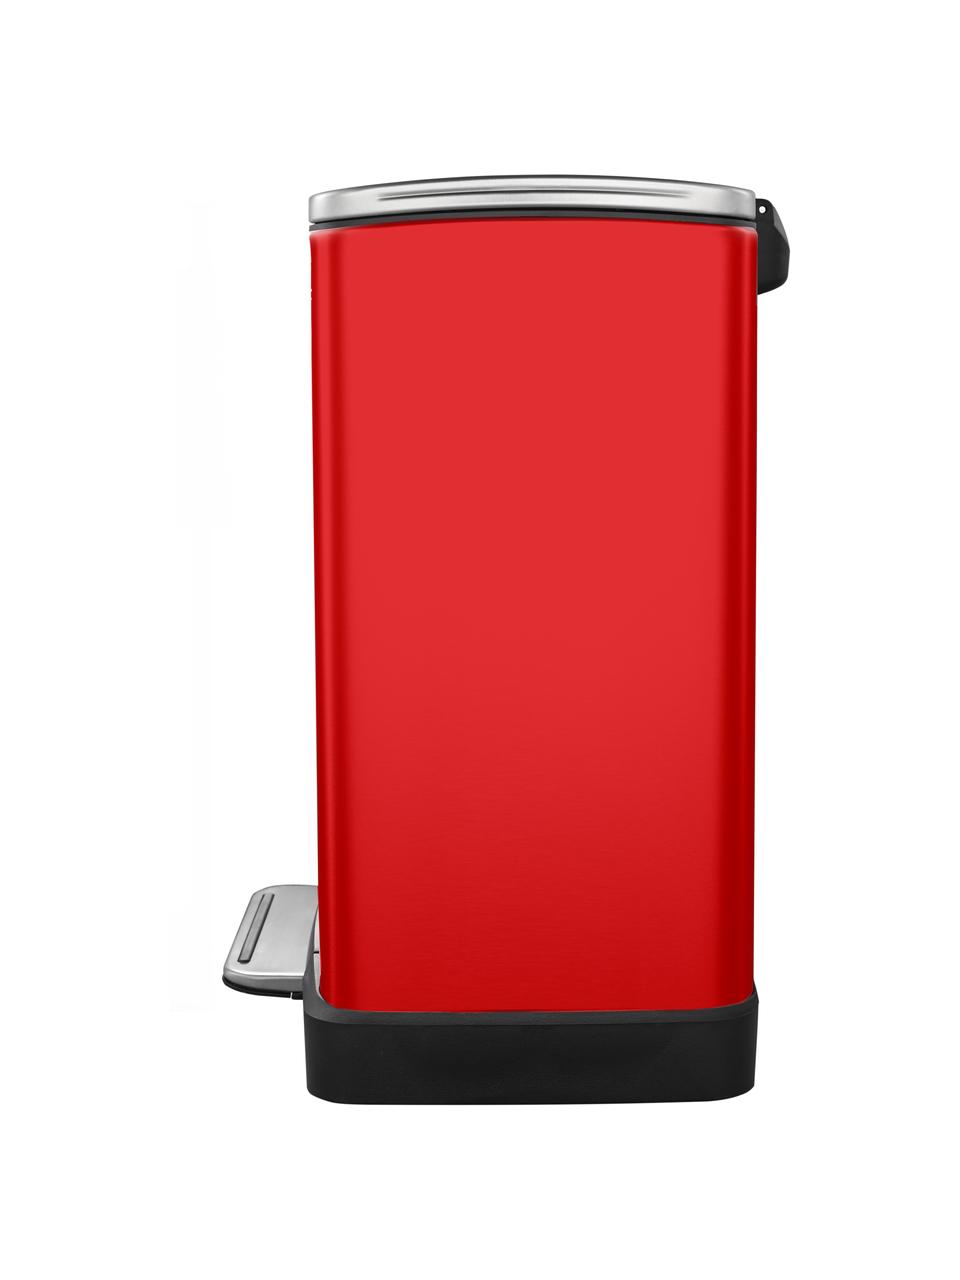 Pattumiera Recycle E-Cube, 28 L + 18 L, Contenitore: acciaio, Rosso, Larg. 50 x Alt. 65 cm, 28 L + 18 L